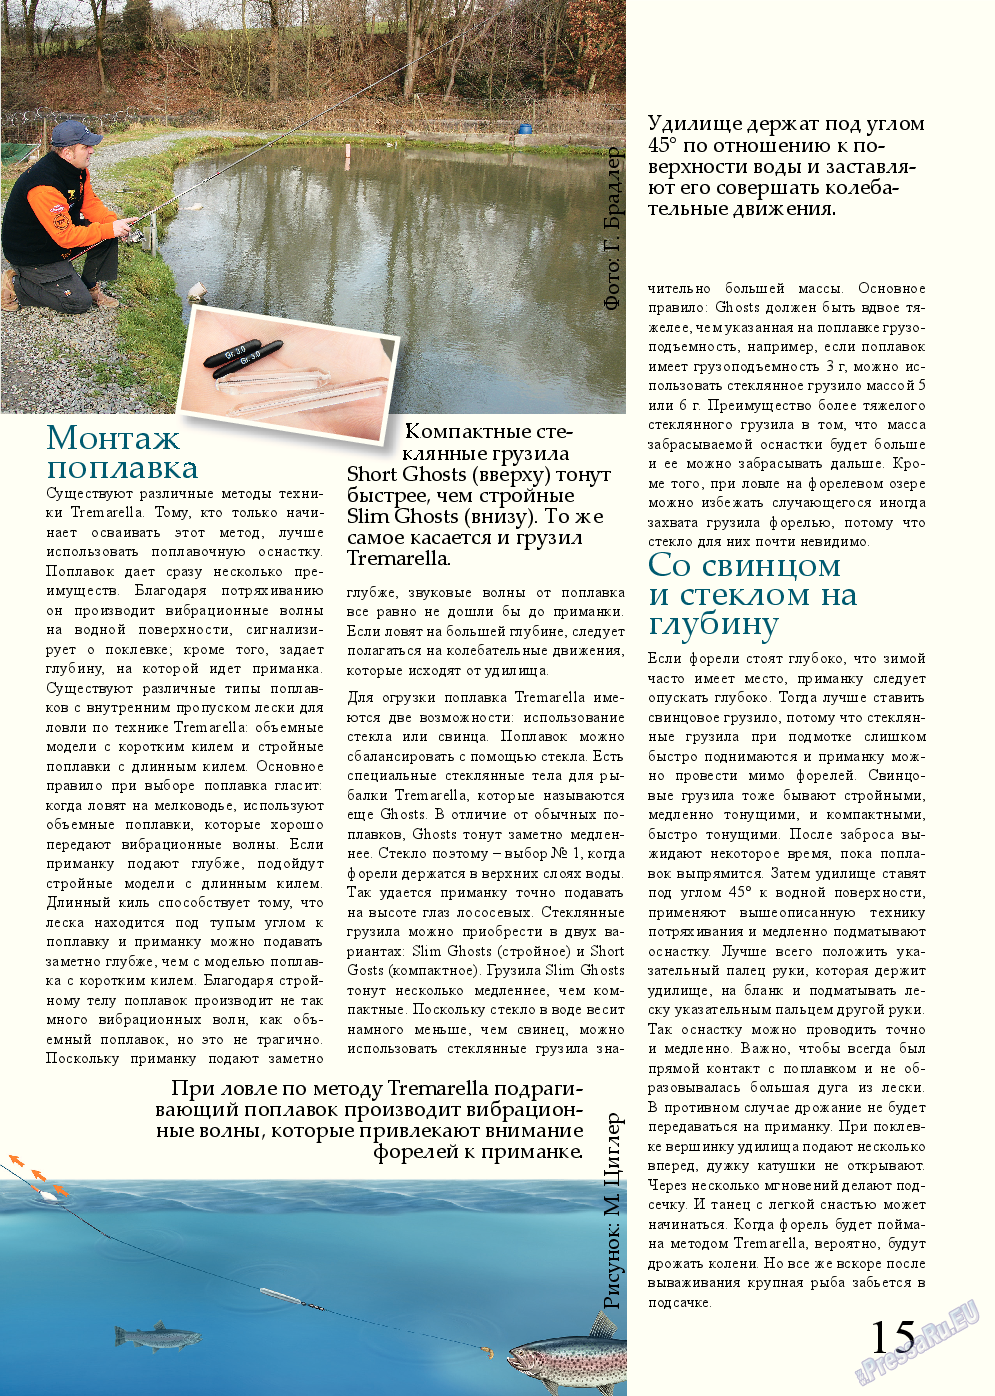 Рыбалка Plus, журнал. 2014 №2 стр.15